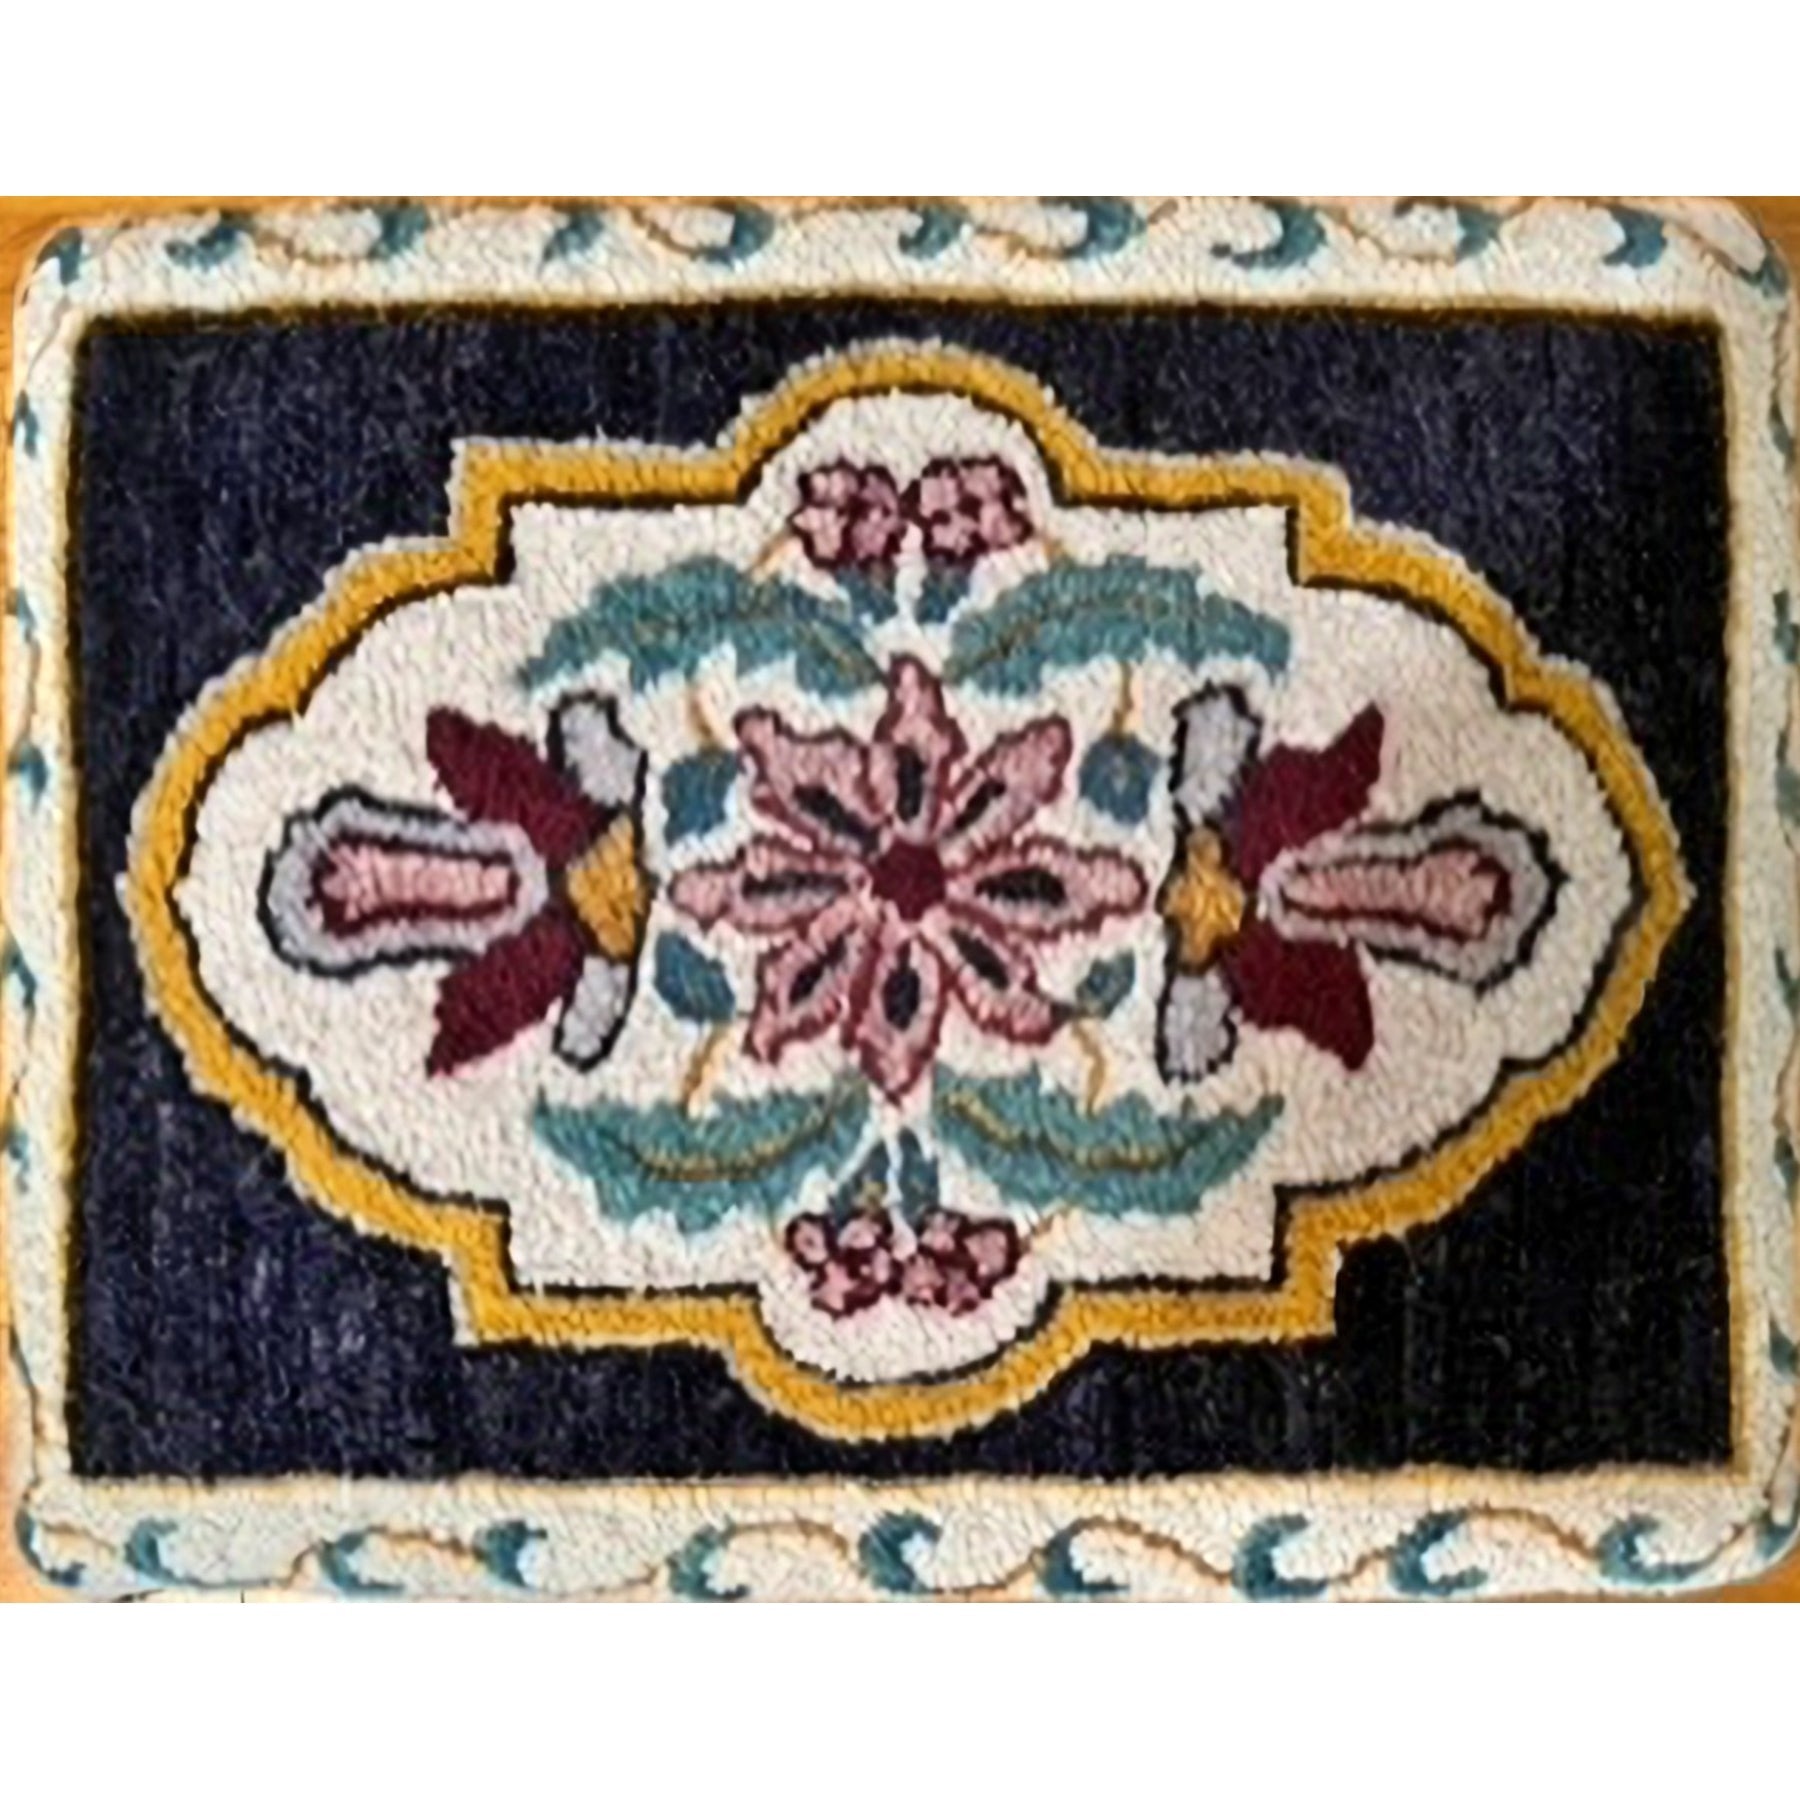 Shah Abbas, rug hooked by Linda Panella